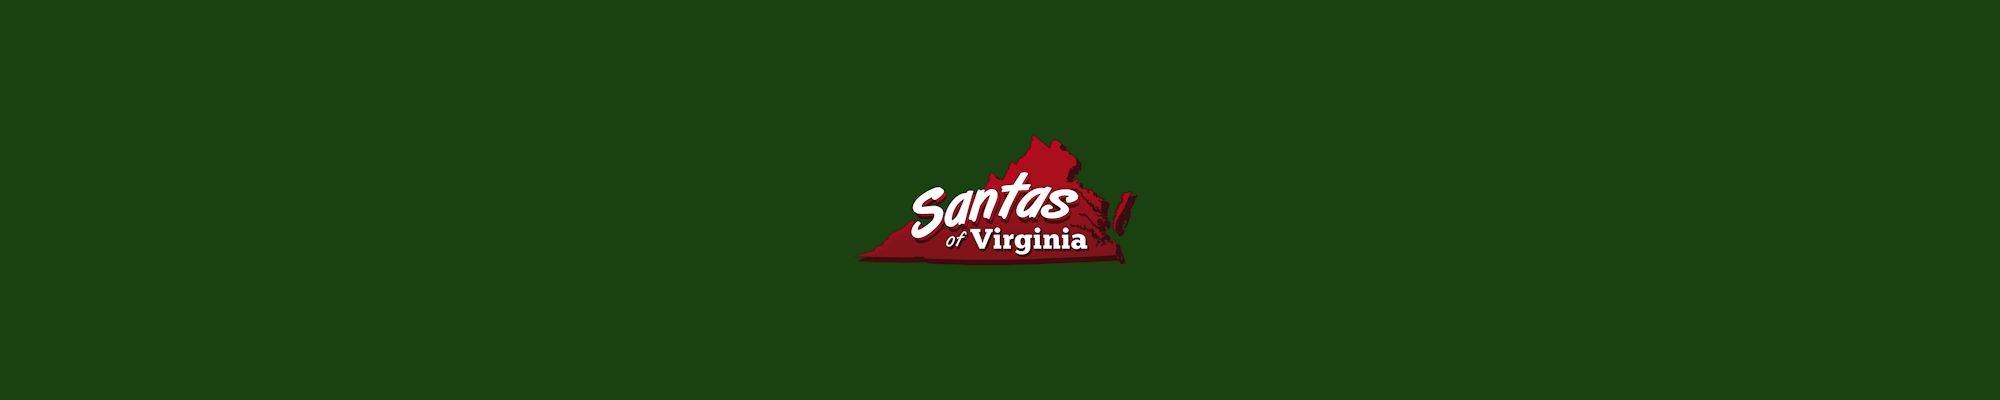 Virginia Santas